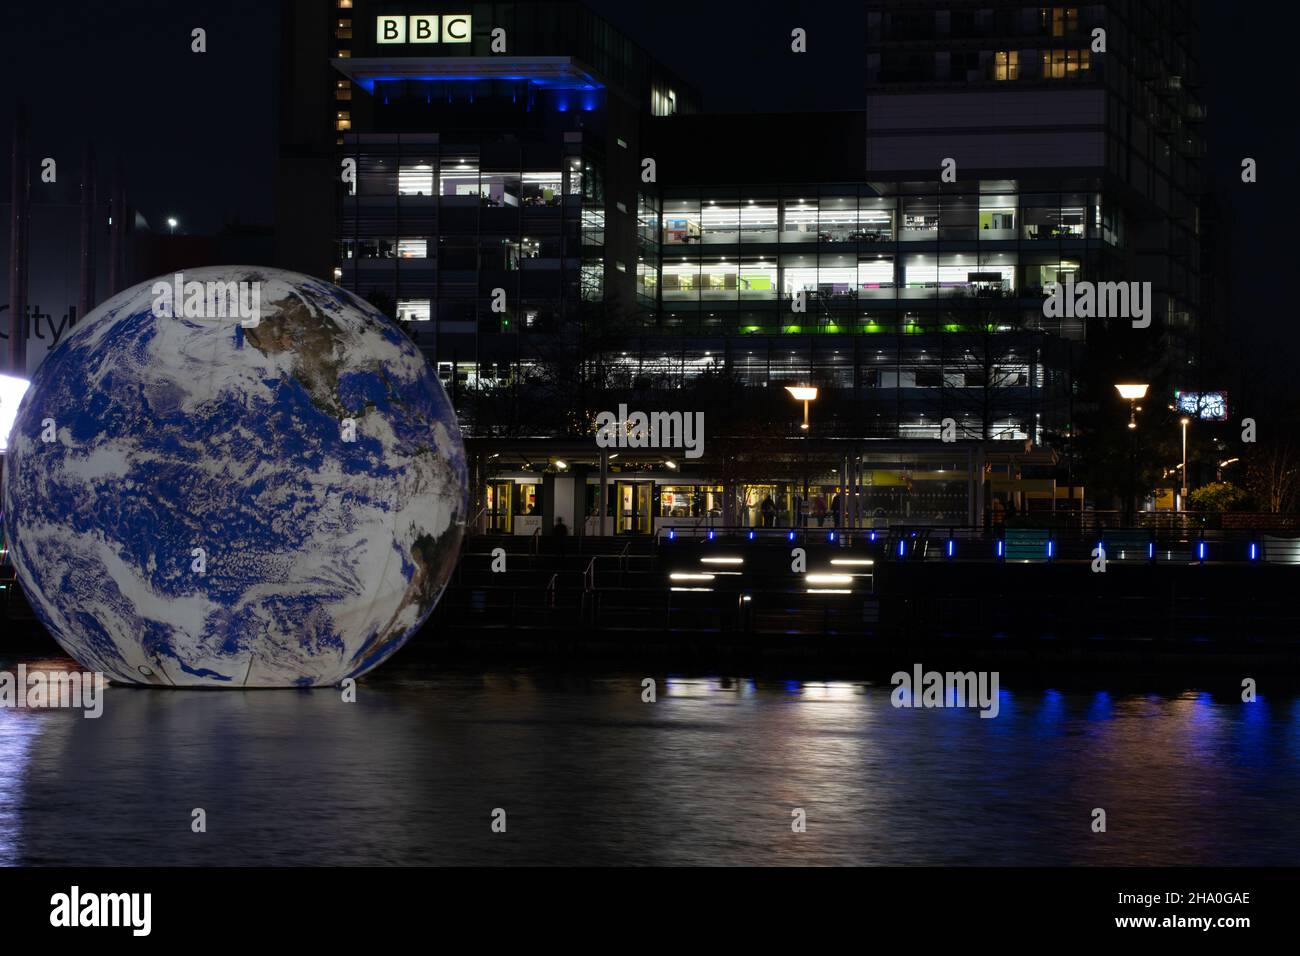 Evento delle onde leggere di Media City con installazione Floating Globe nell'edificio della BBC Salford Quays con tram Metrolink. Esposizione prolungata. Manchester Regno Unito Foto Stock